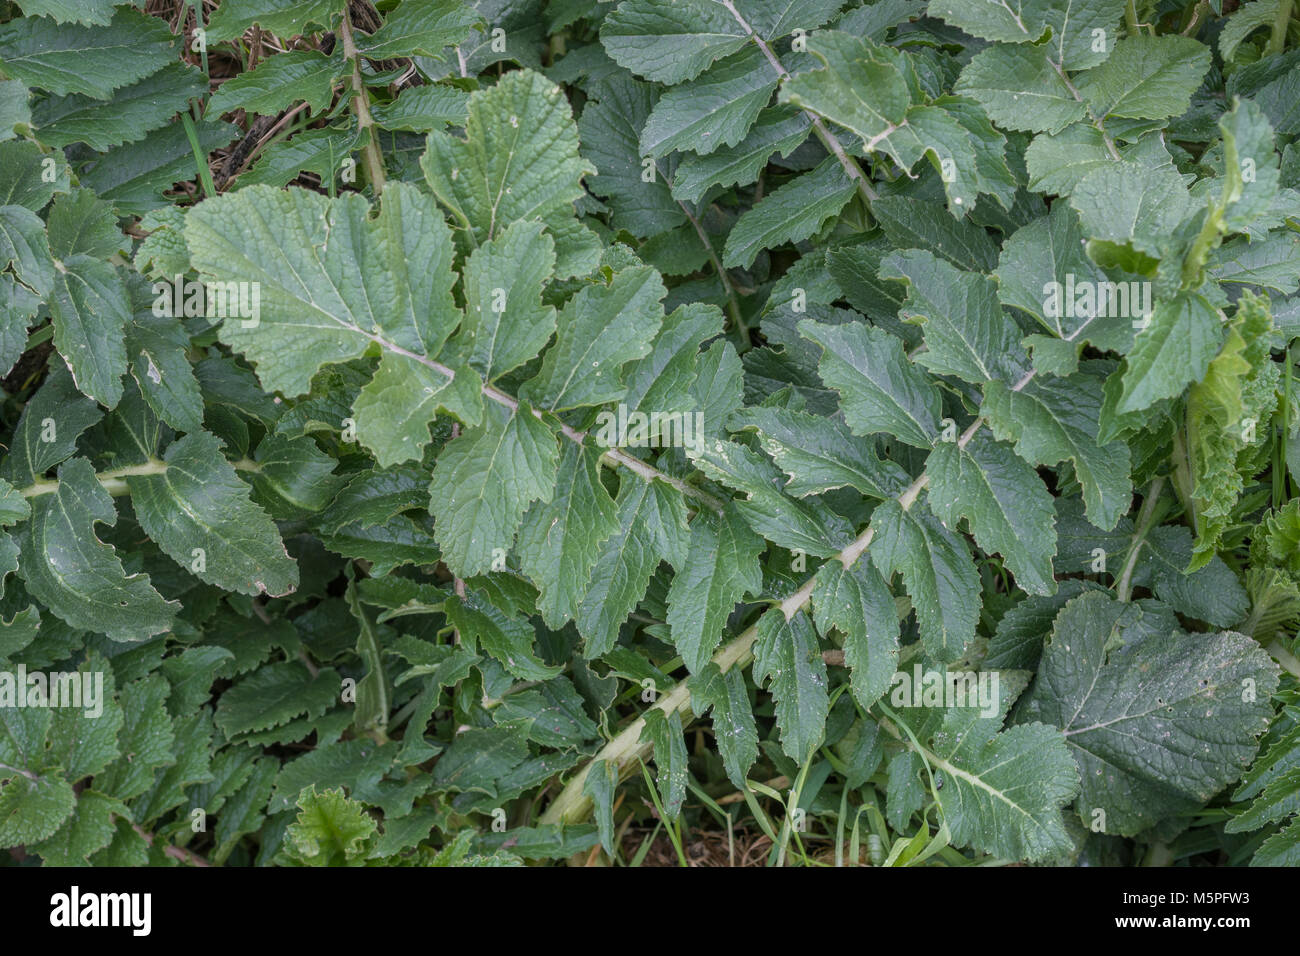 Foliage / leaves of Sea Radish (Cornwall). Foraged leaves have a radishy taste milder than domesticated radish. Raphanus raphanistrum ssp. maritimus Stock Photo